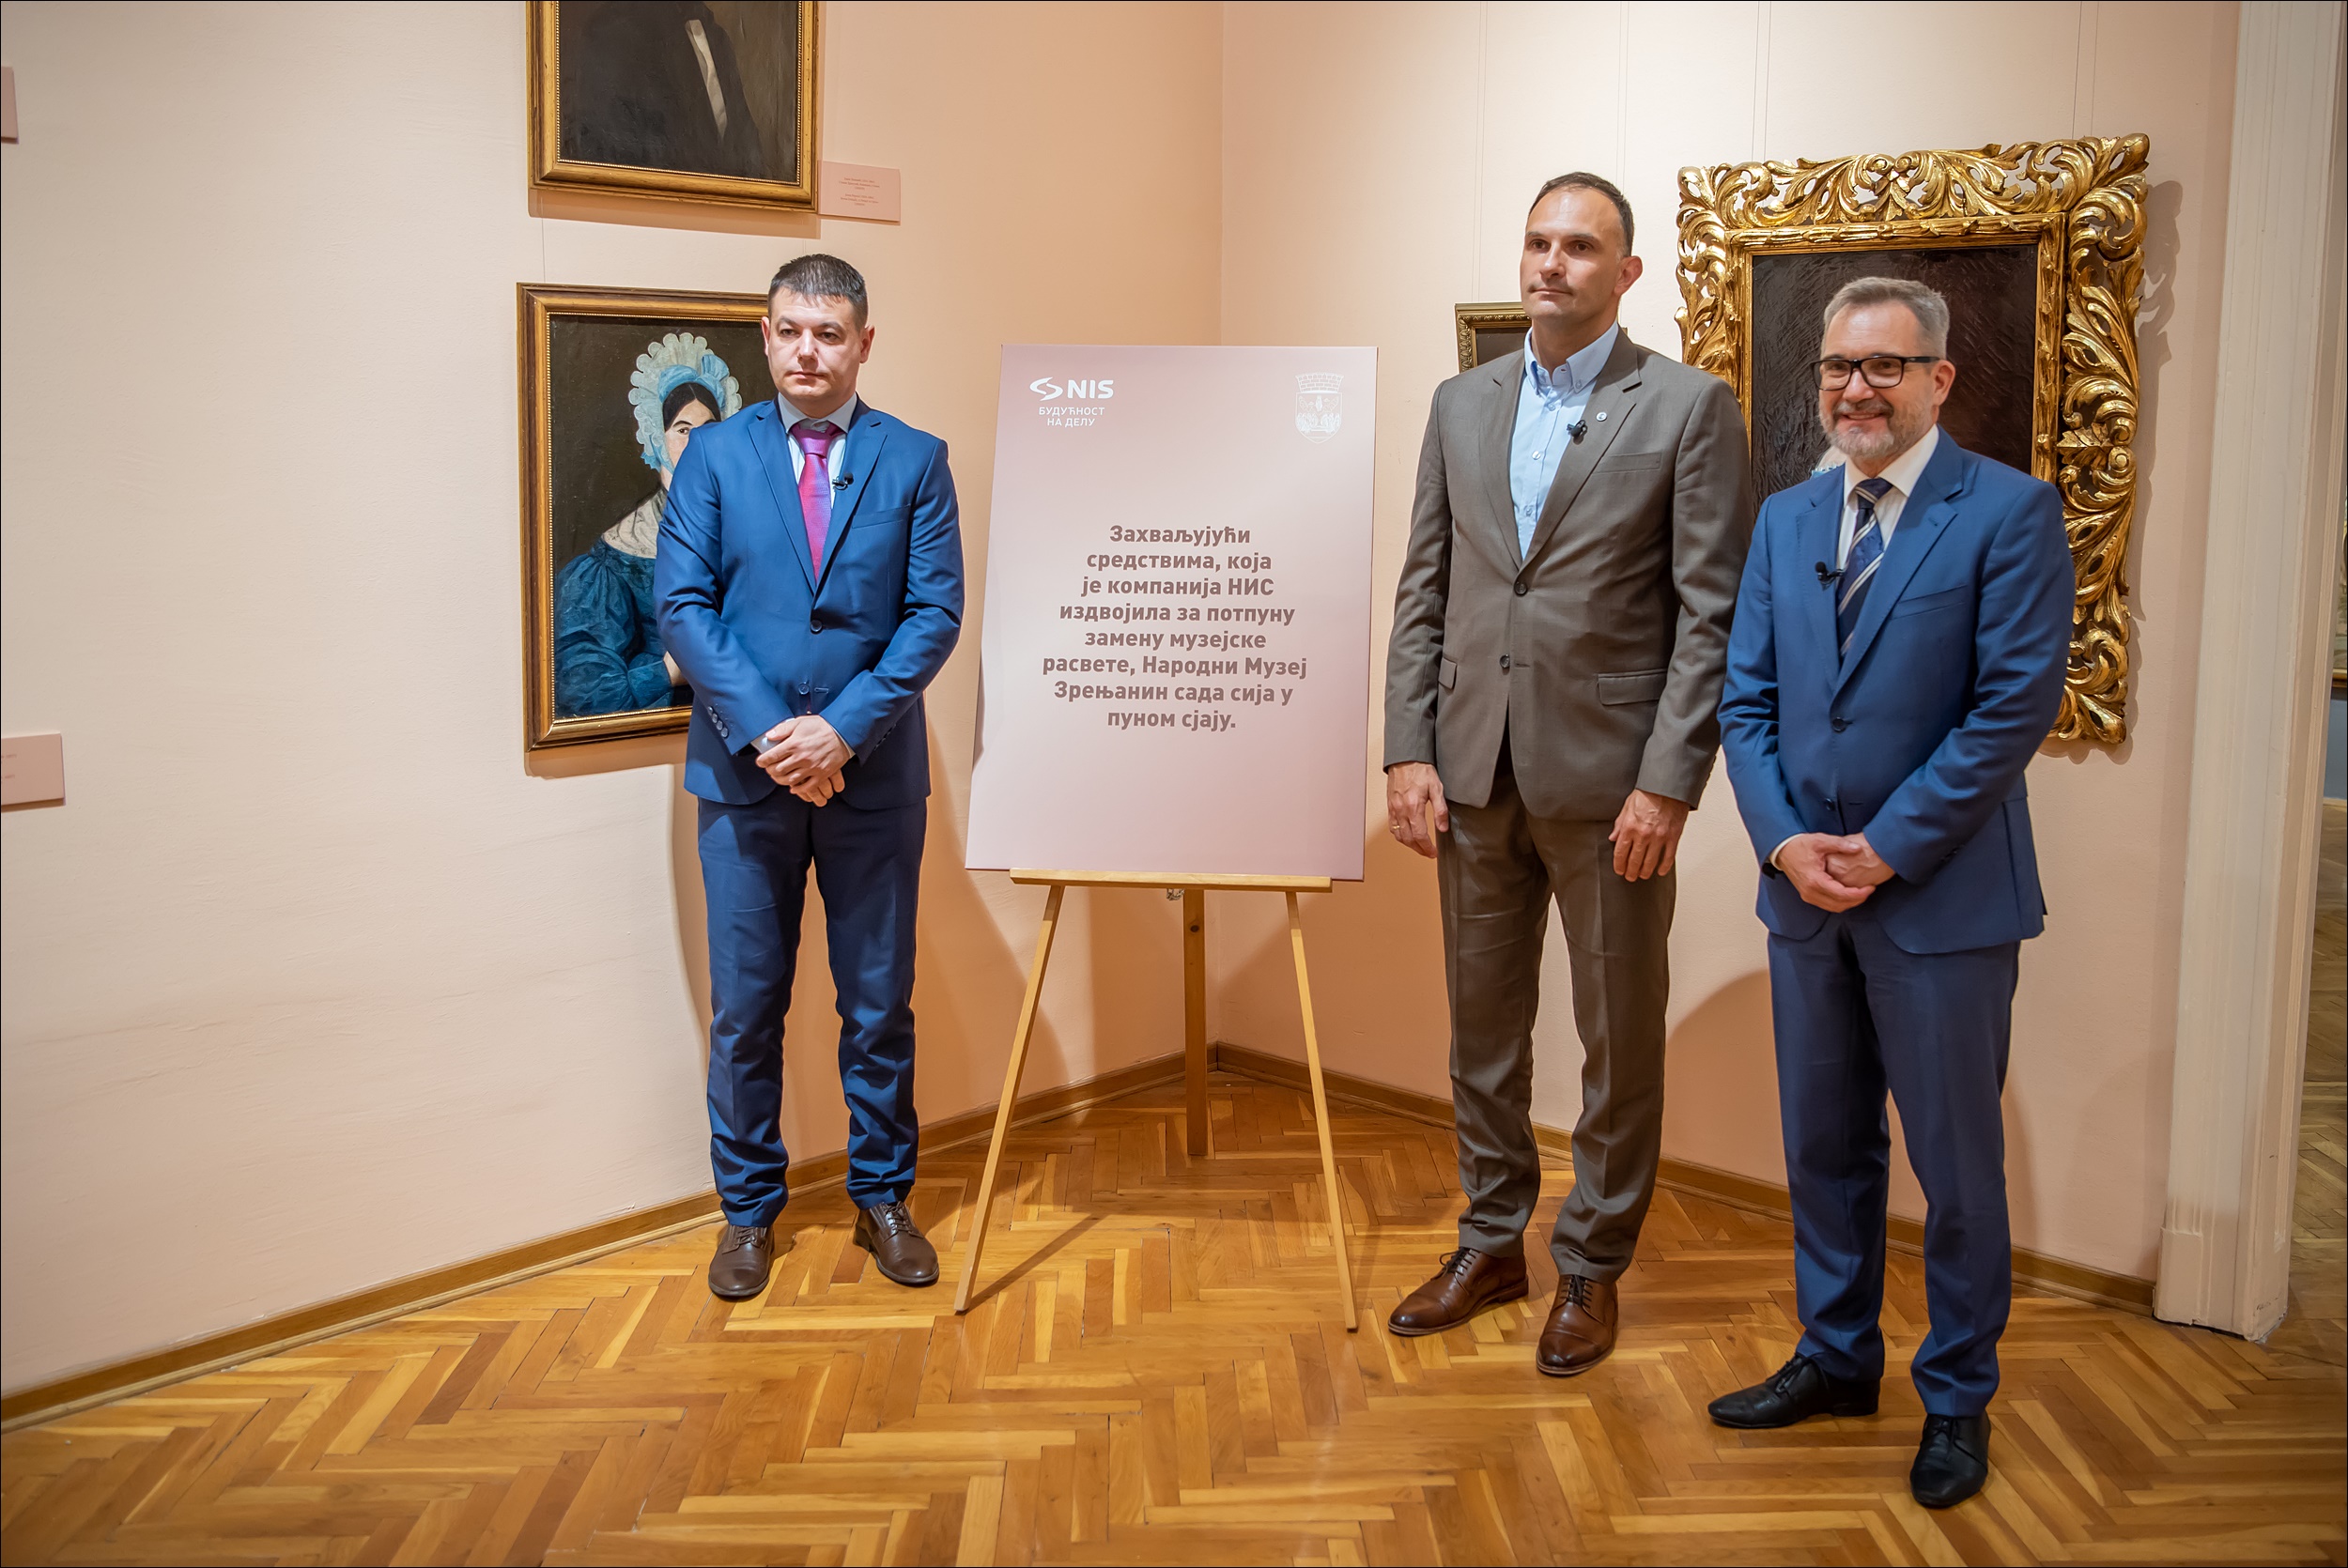 Svečanost u muzeju u Zrenjaninu 30. juna: Siniša Onjin, Simo Salapura i Vadim Smirnov